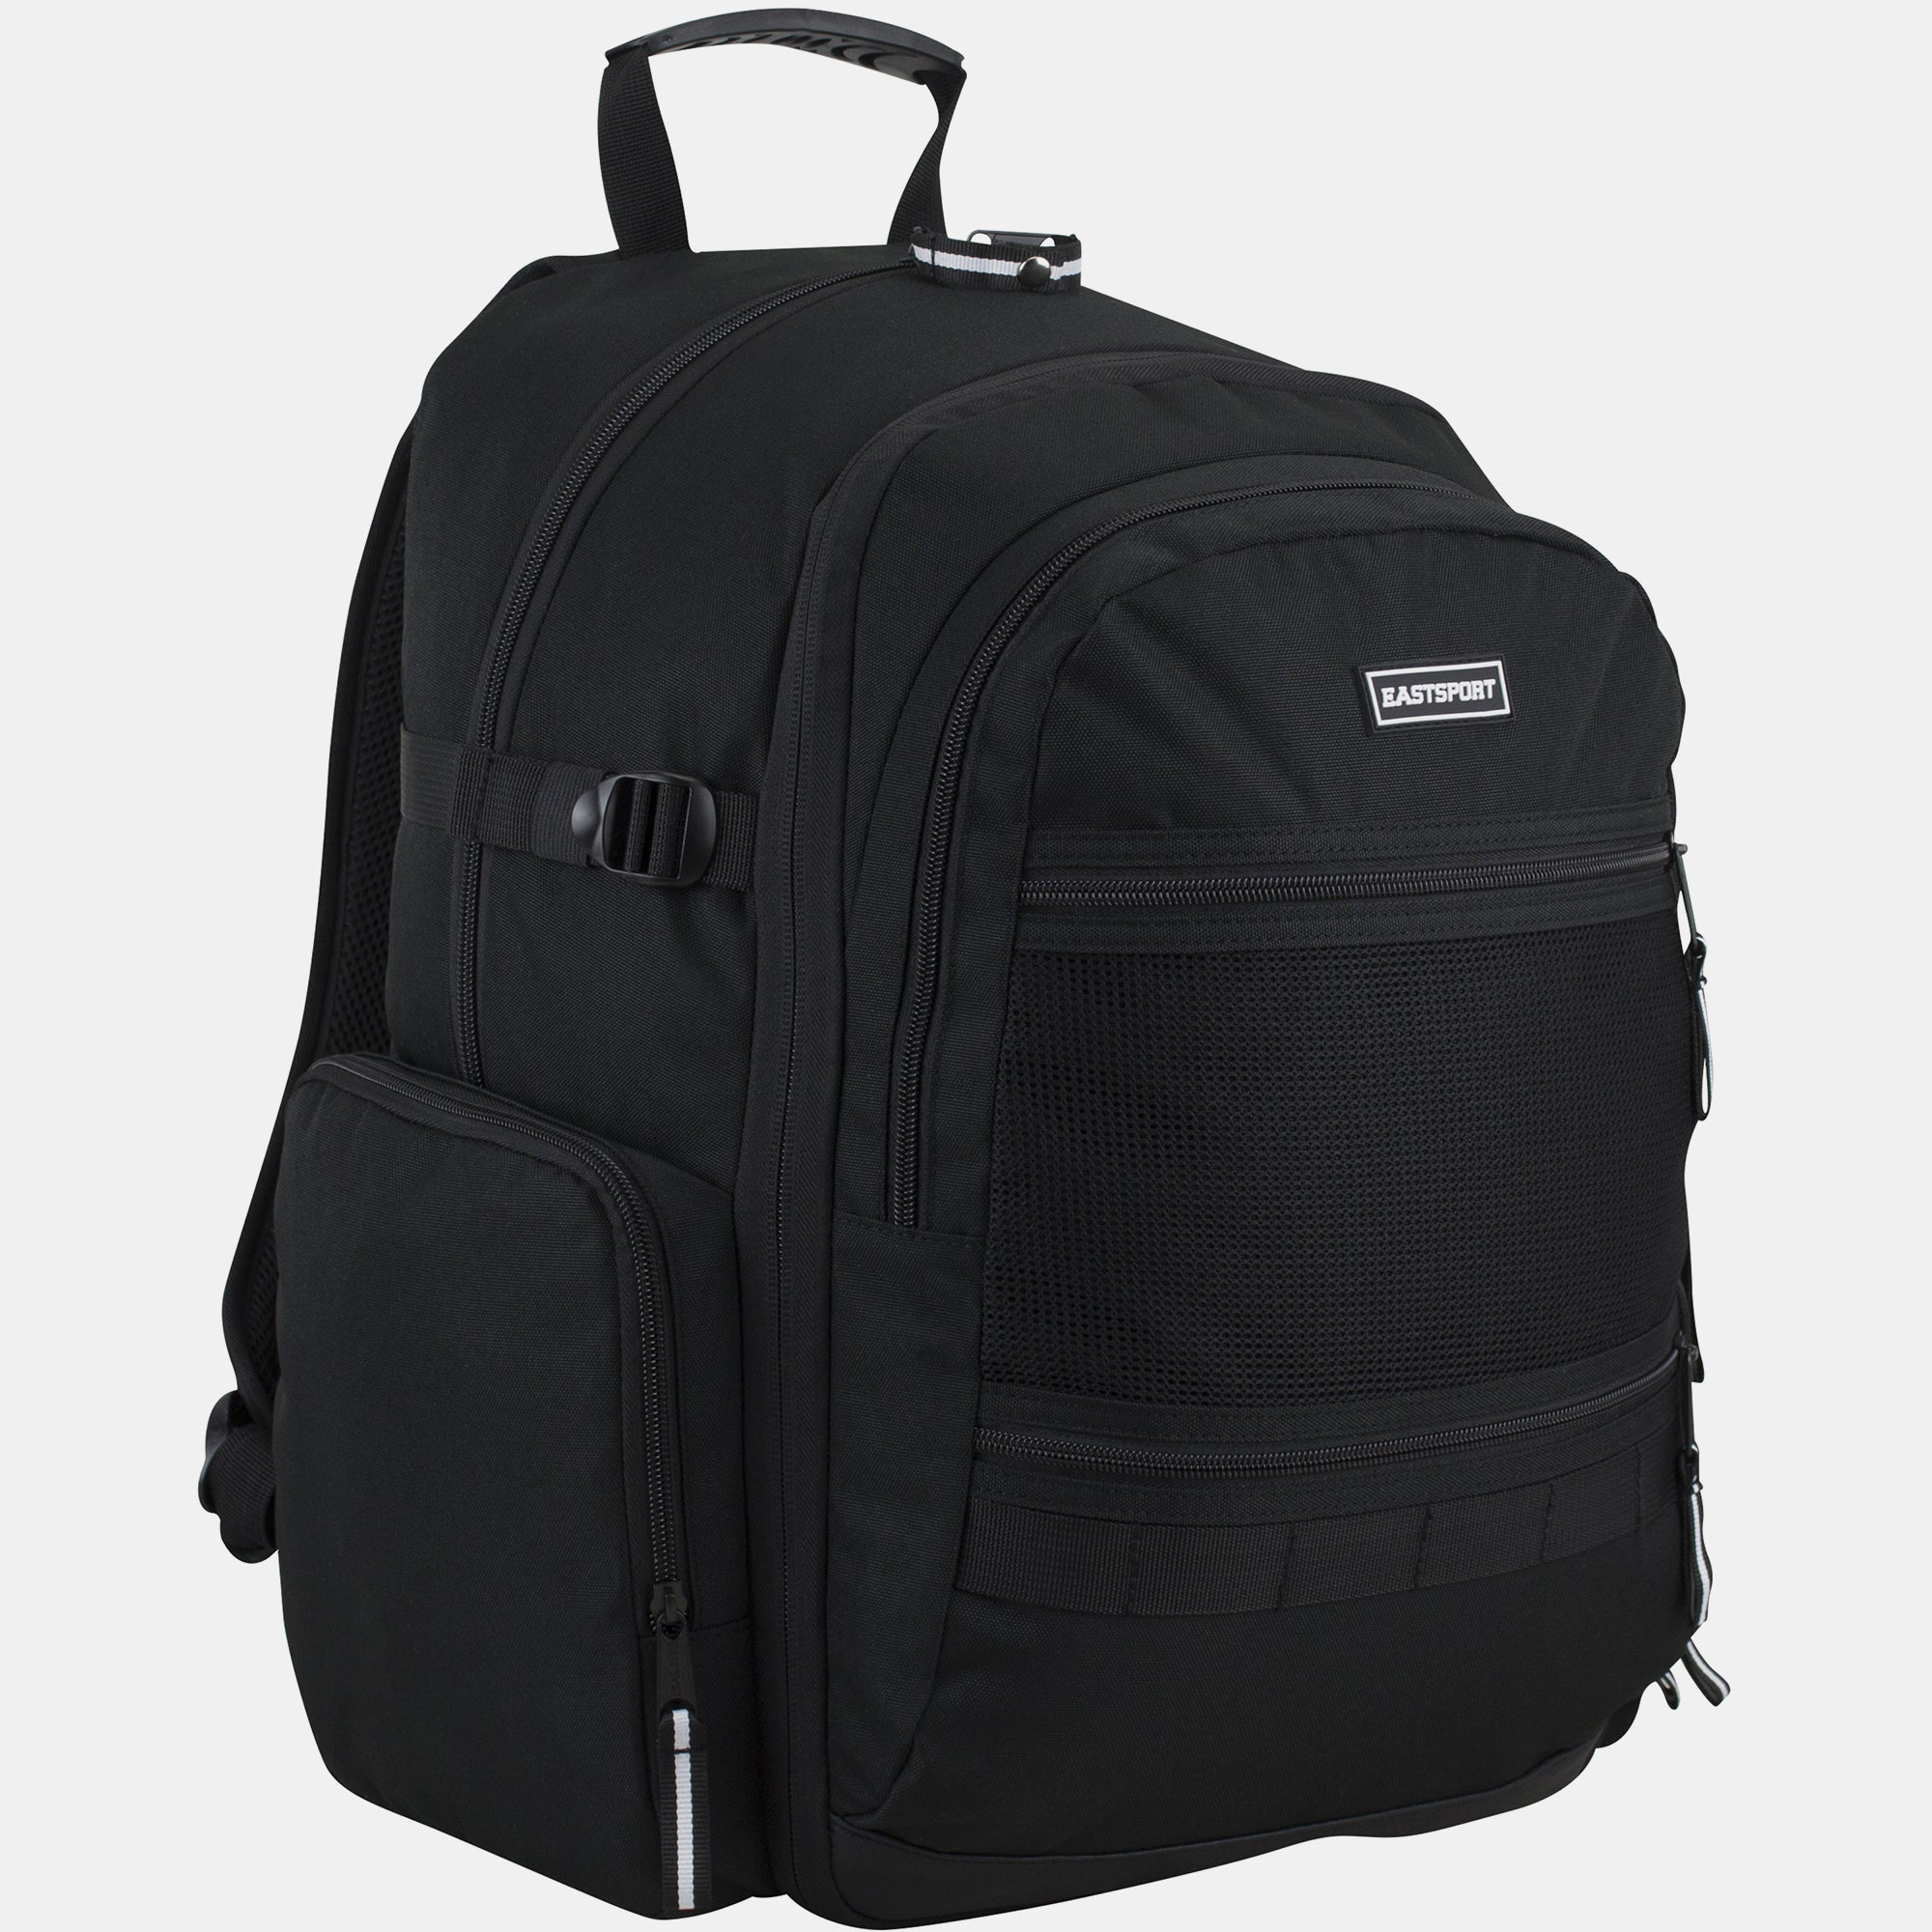 Eastsport Unisex Expandable Alliance Backpack